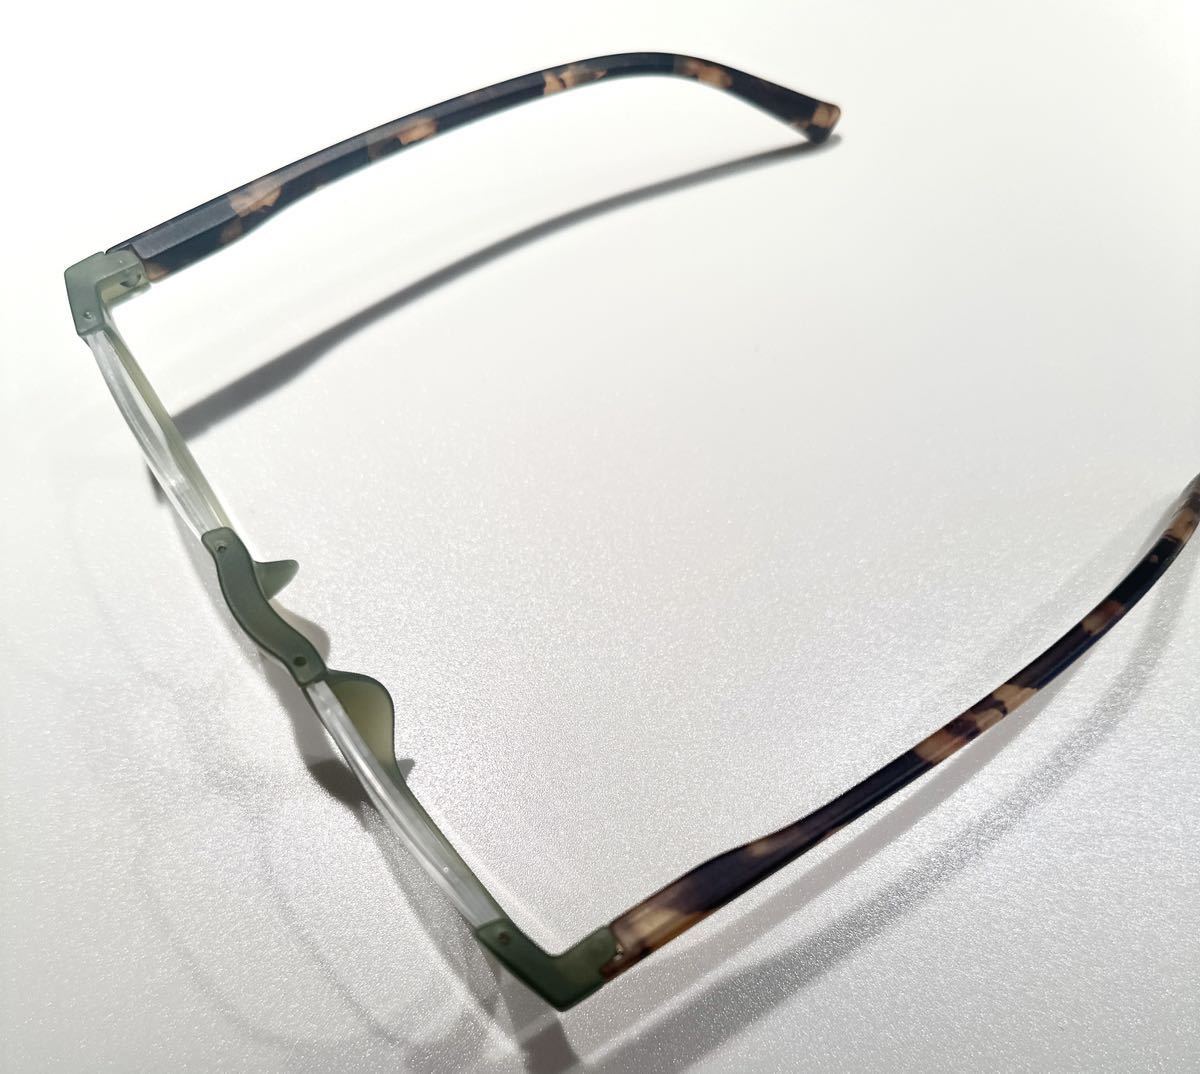  стиль очки при дальнозоркости +1.0 голубой свет cut линзы использование мягкий чехол имеется неполная оправа с опорой в нижней части ведущий стакан spring шарнир зеленый 